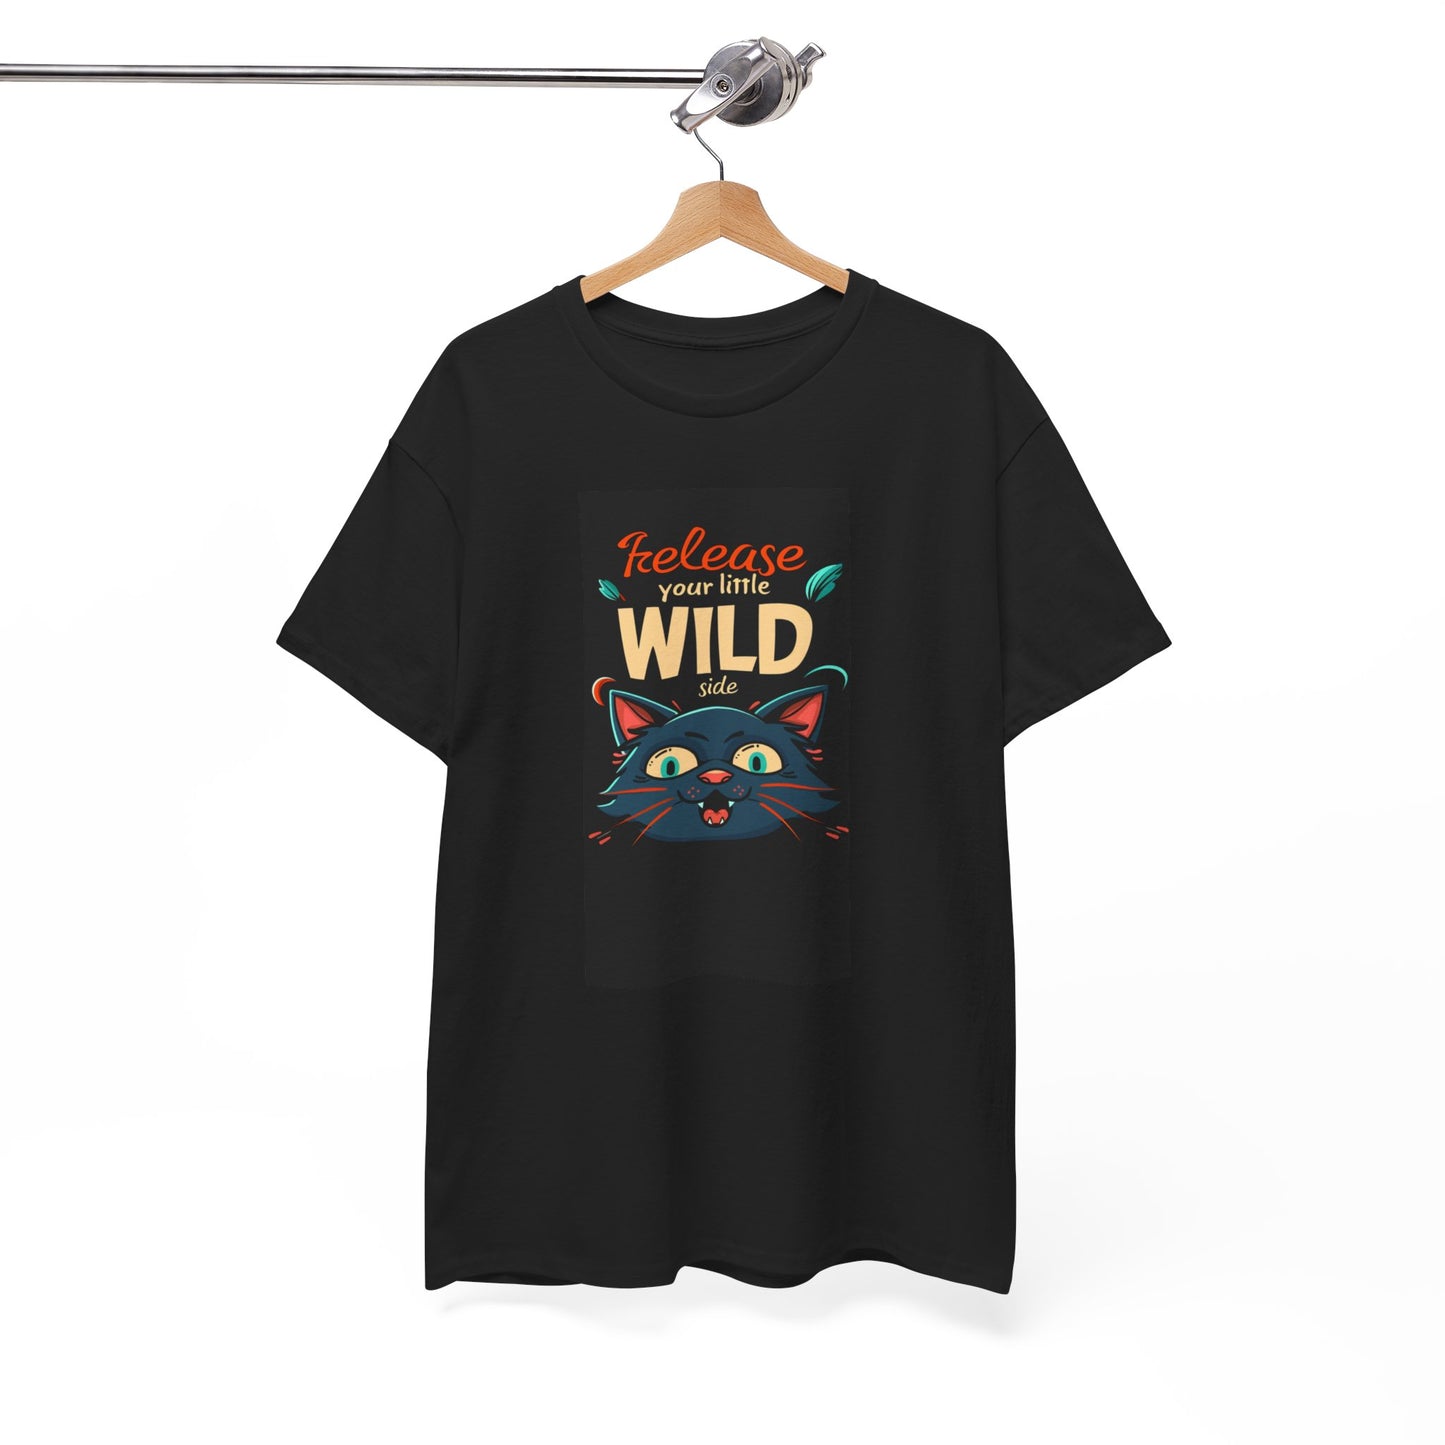 Release Little Wild Side T-shirt